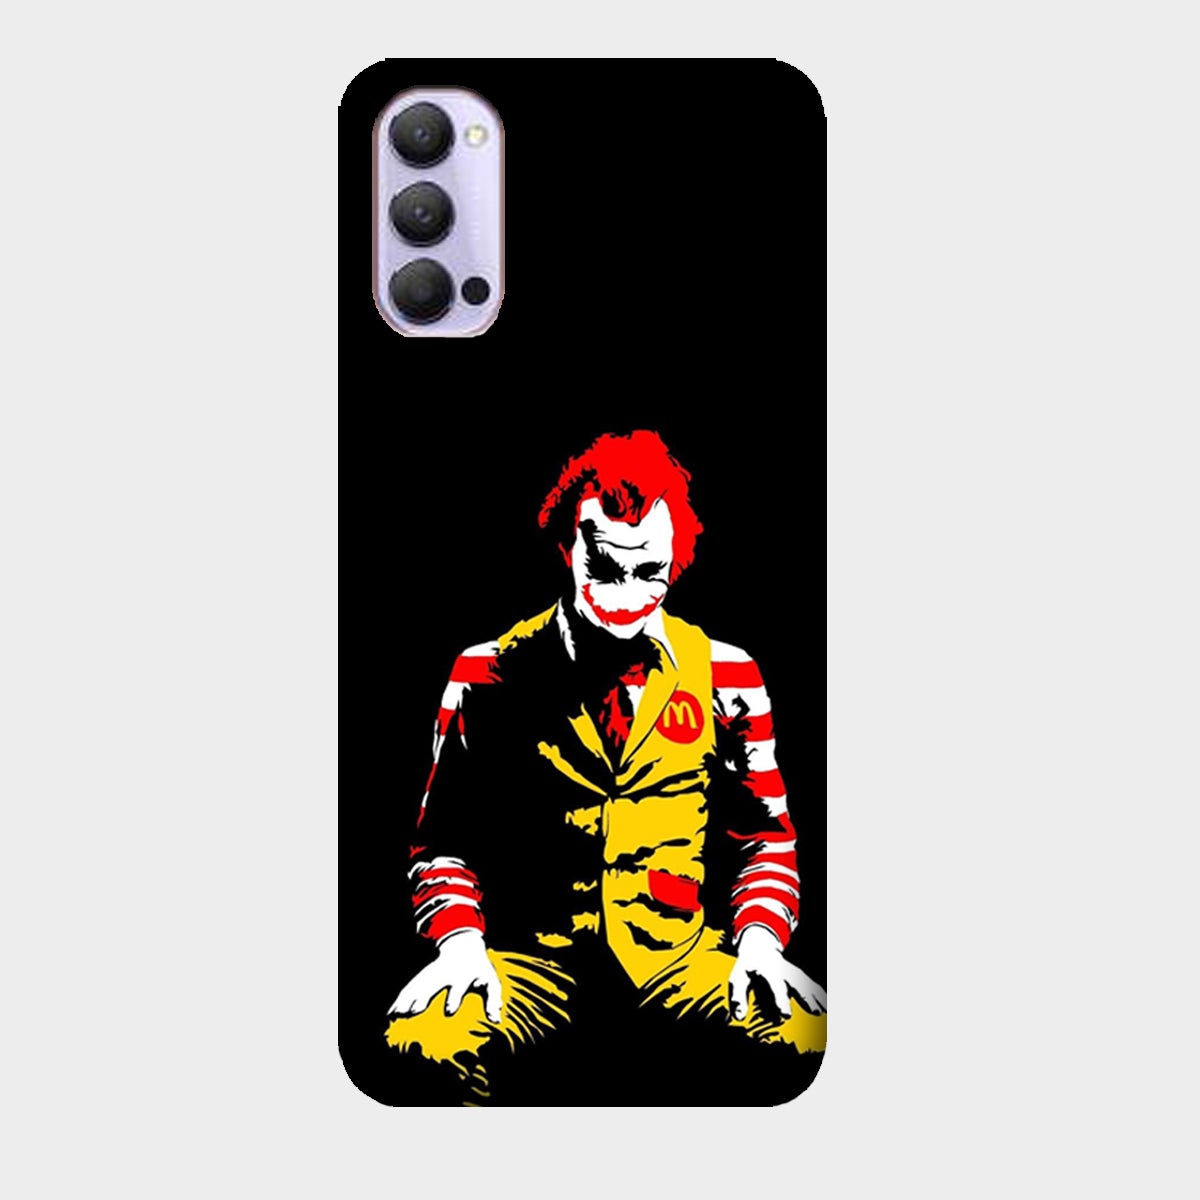 Joker McD - Mobile Phone Cover - Hard Case